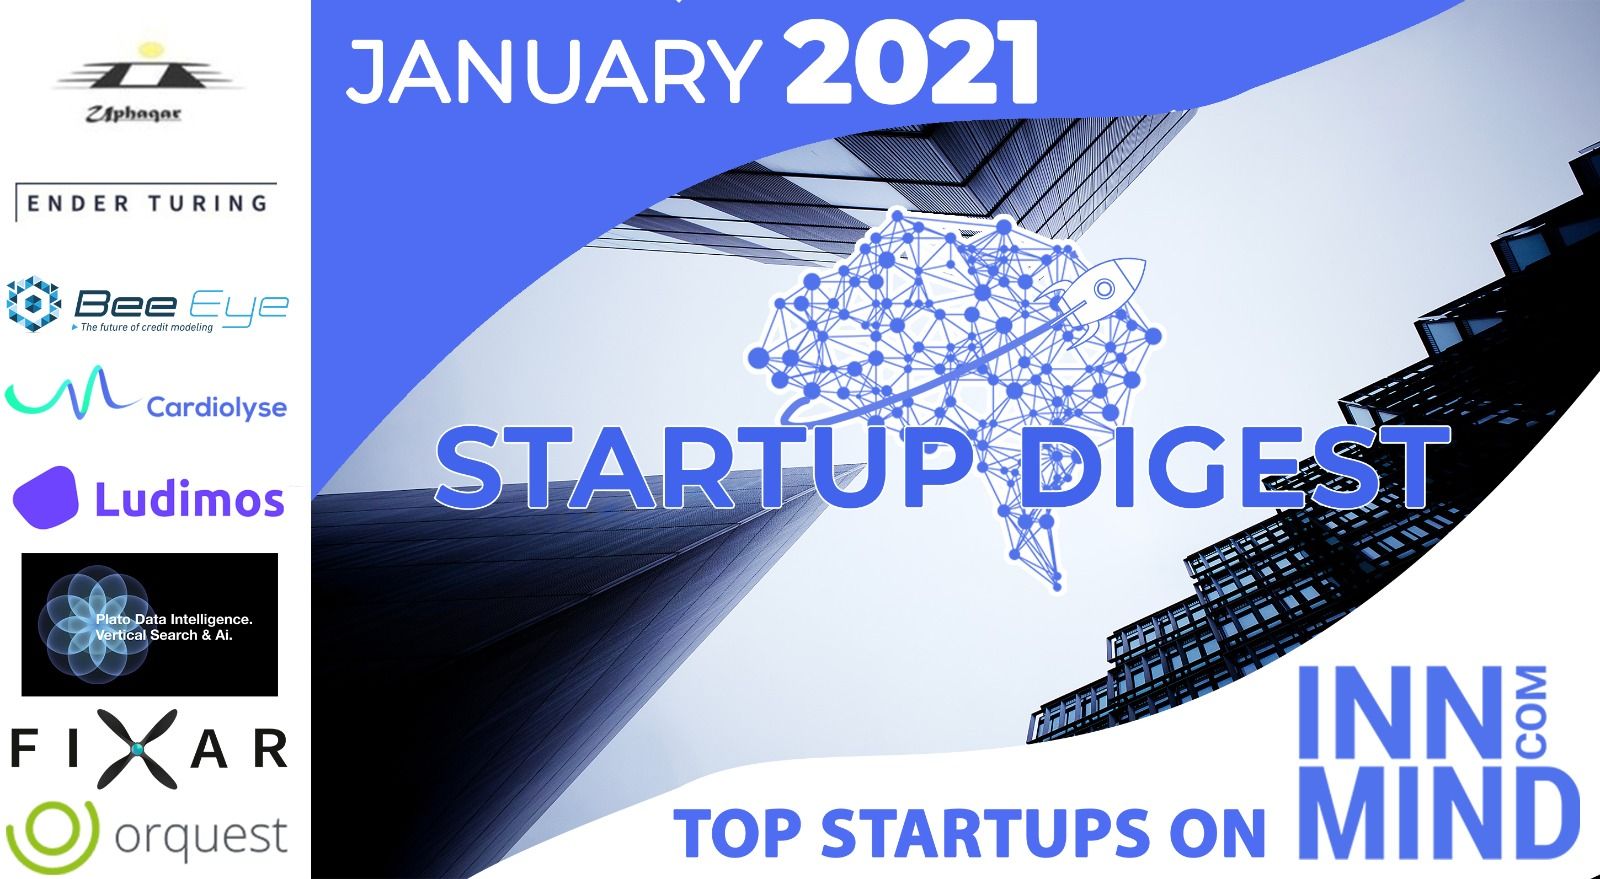 January 2021 Startup Digest: Top Startups on InnMind Platform